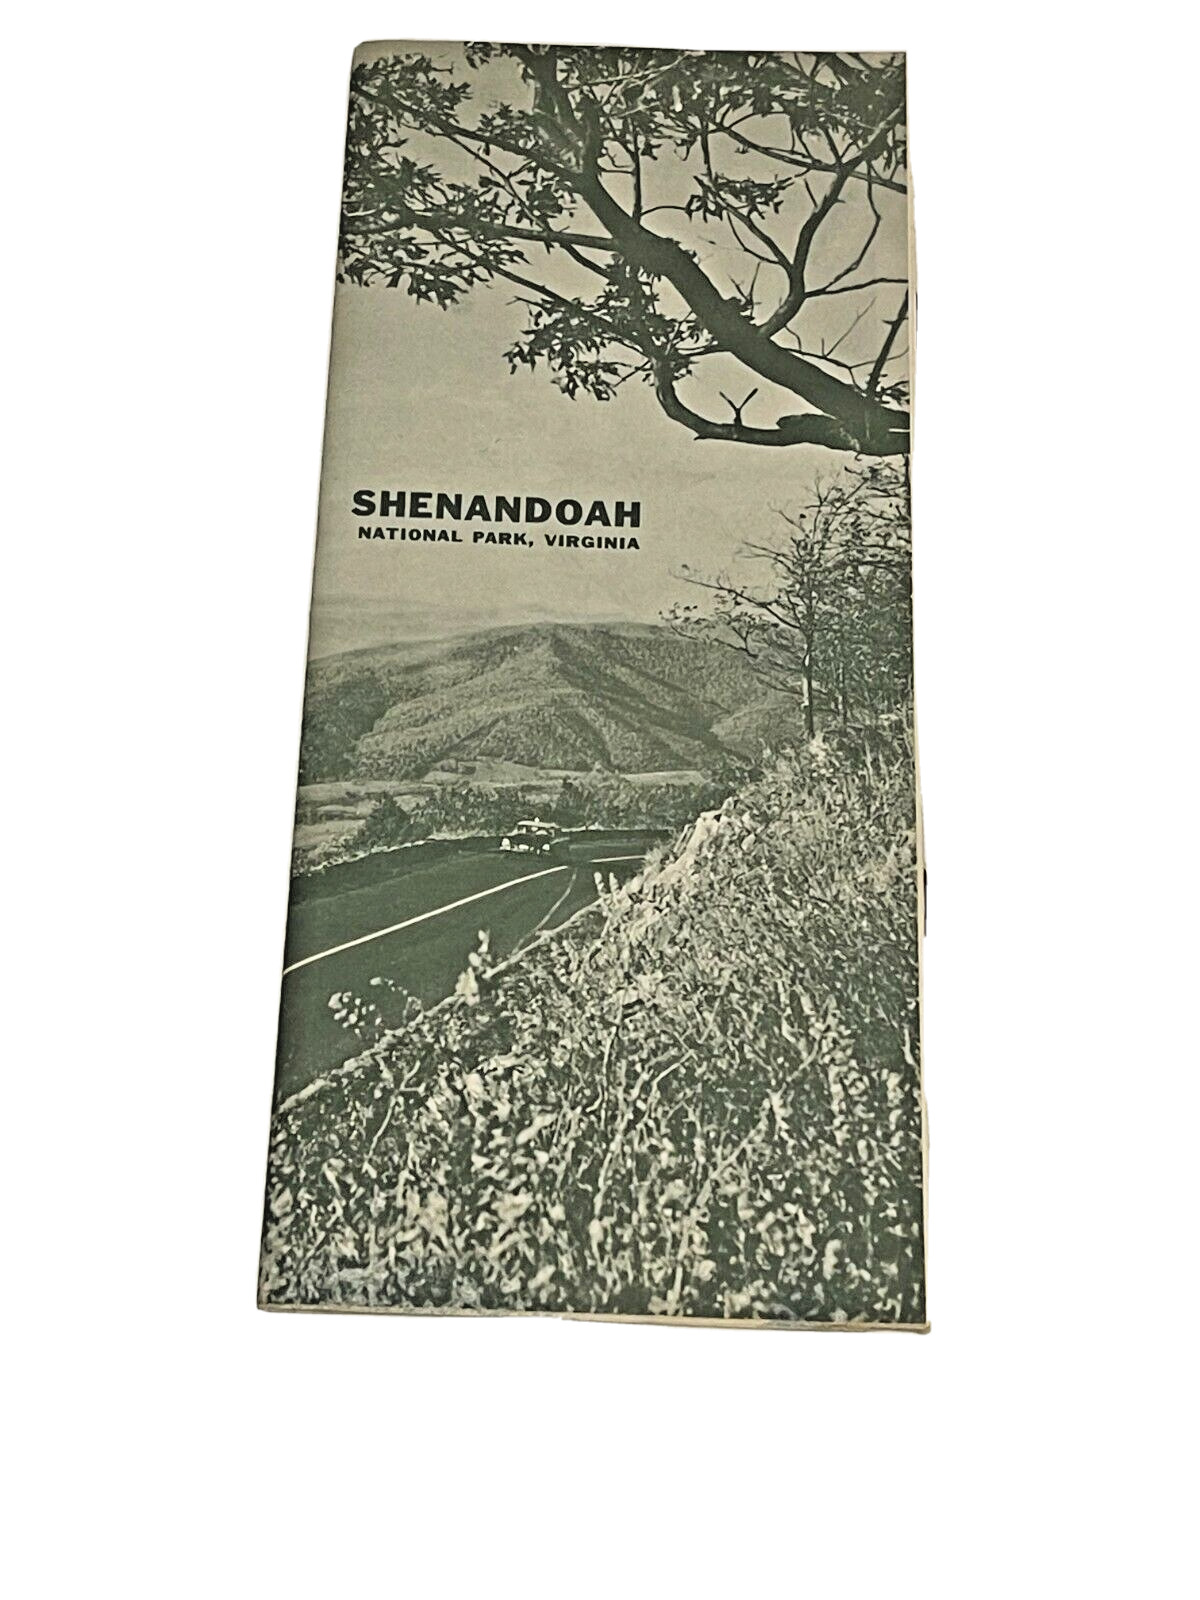 1966 SHENANDOAH NATIONAL PARK, VIRGINIA VINTAGE TRAVEL MAP BOOKLET